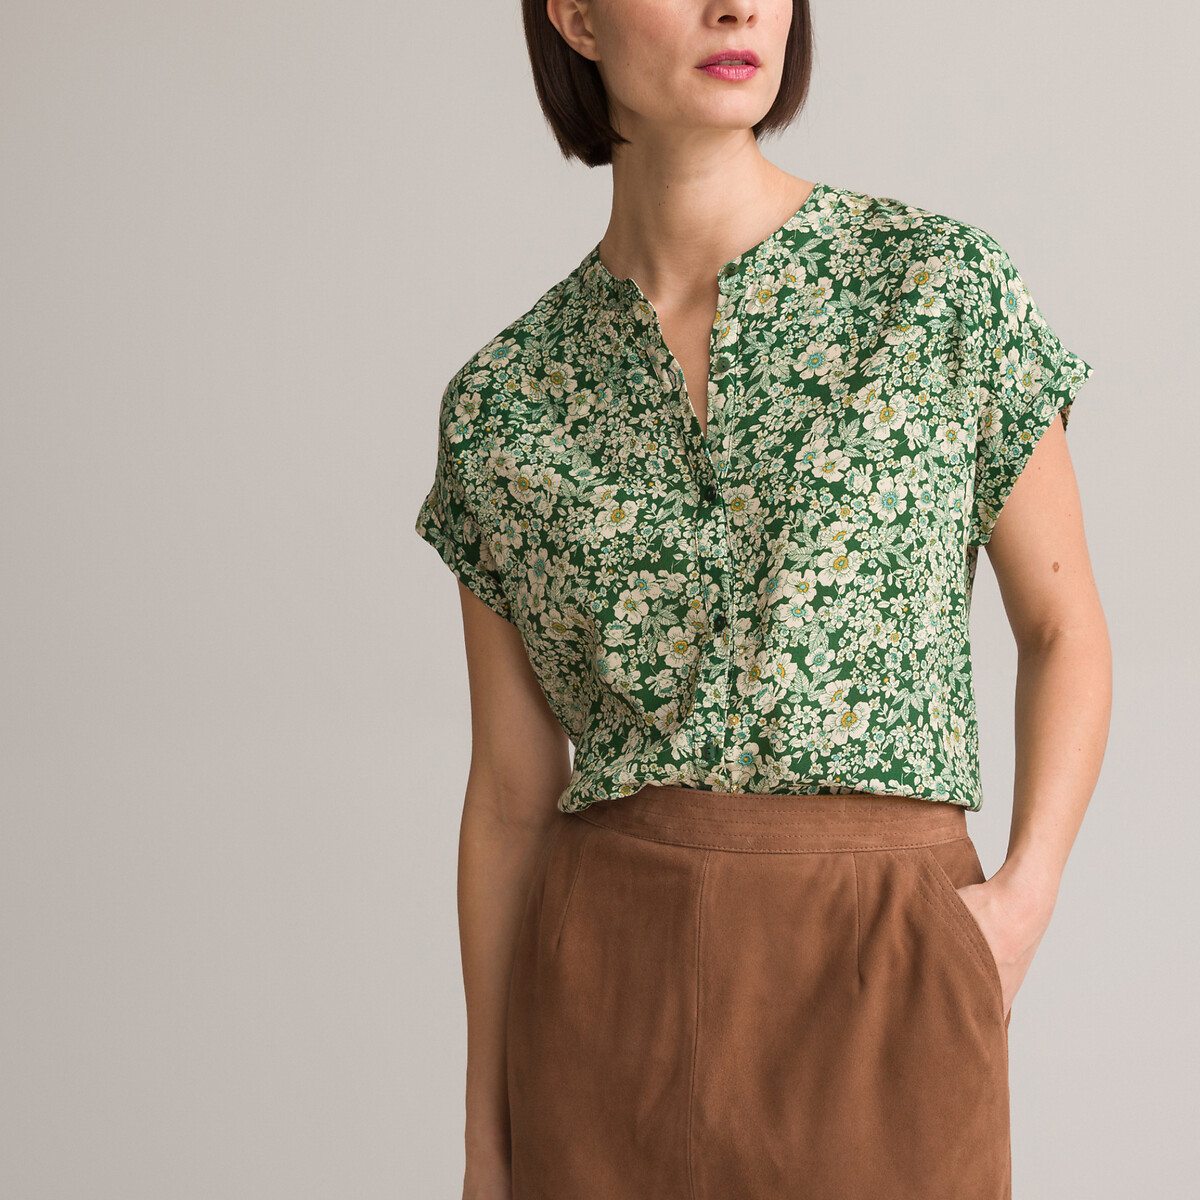 Блузка С круглым вырезом цветочный принт короткие рукава 48 (FR) - 54 (RUS) зеленый